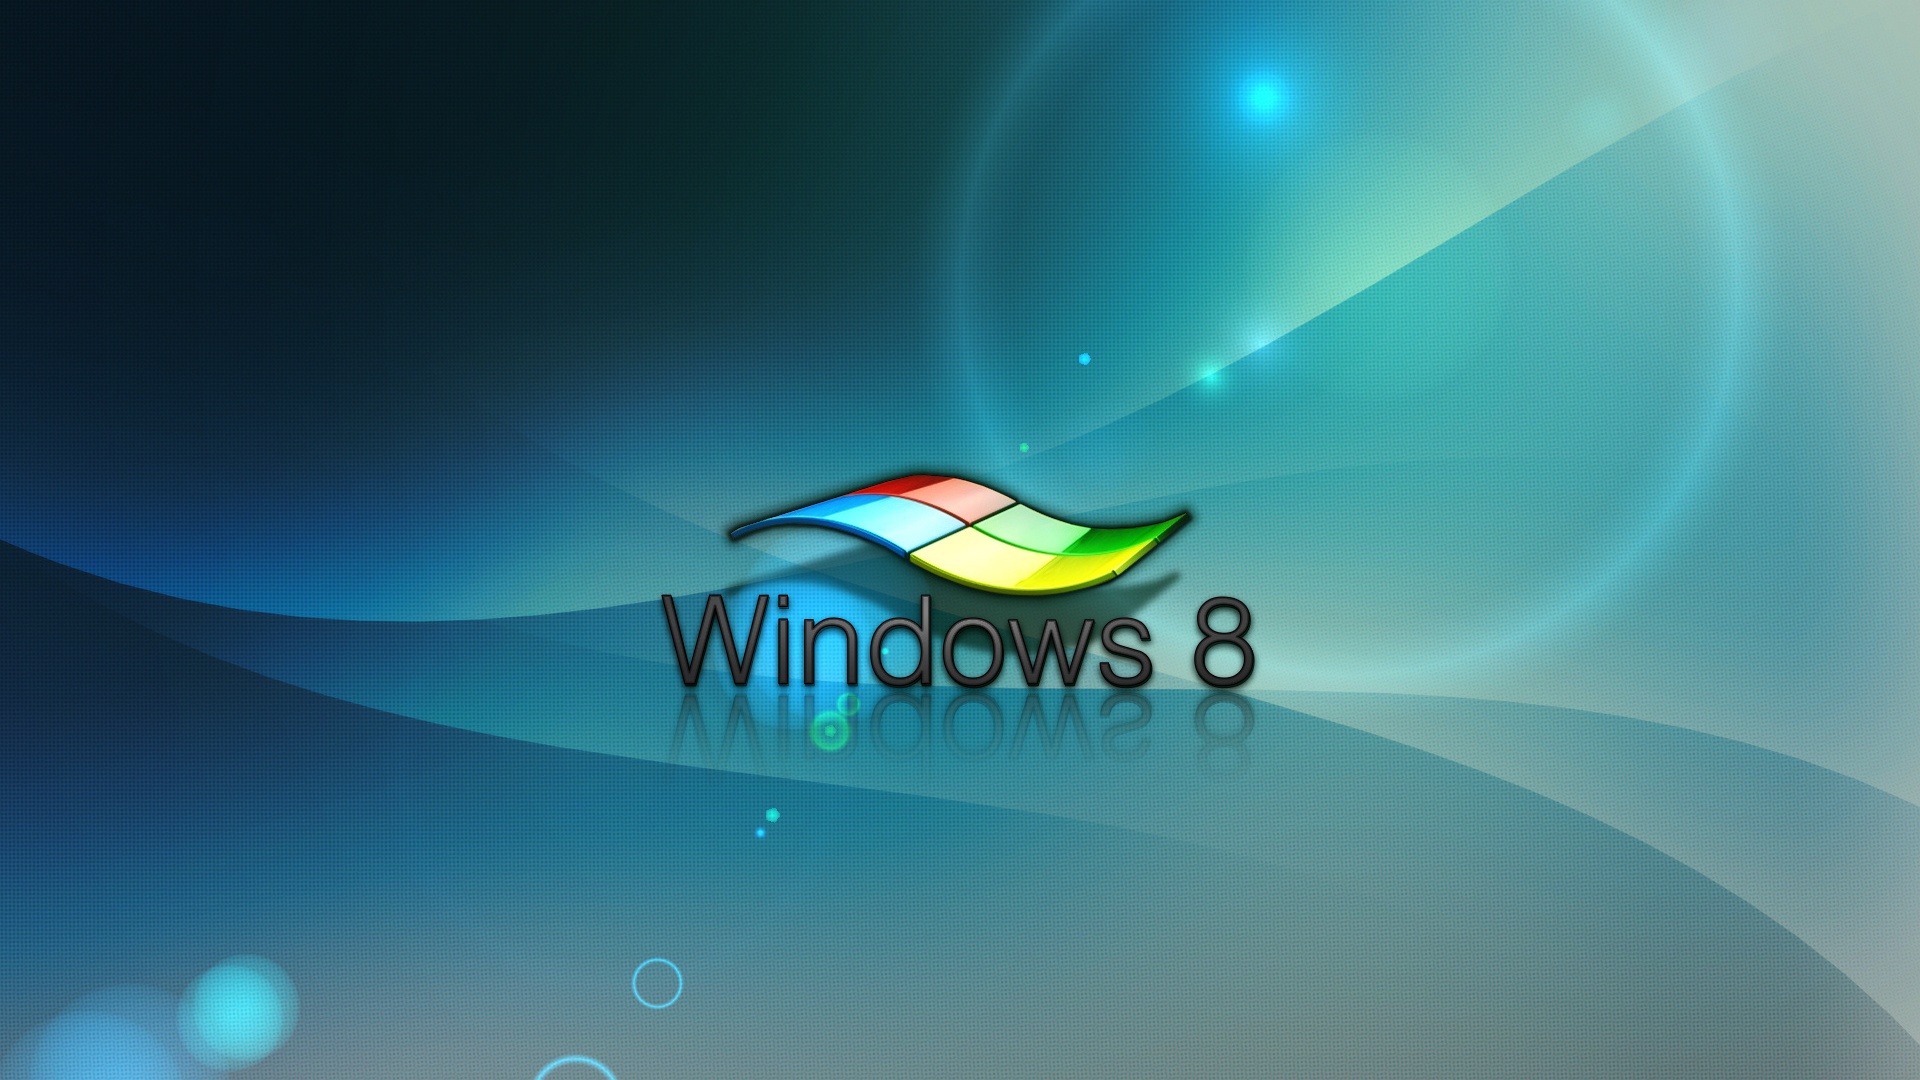 Bạn đang tìm kiếm hình nền ấn tượng cho Windows 8 của mình? Đừng bỏ lỡ bộ sưu tập hình nền đẹp mắt và độc đáo mà chúng tôi đã sưu tầm cho bạn. Hãy tải ngay và làm mới màn hình desktop của bạn.